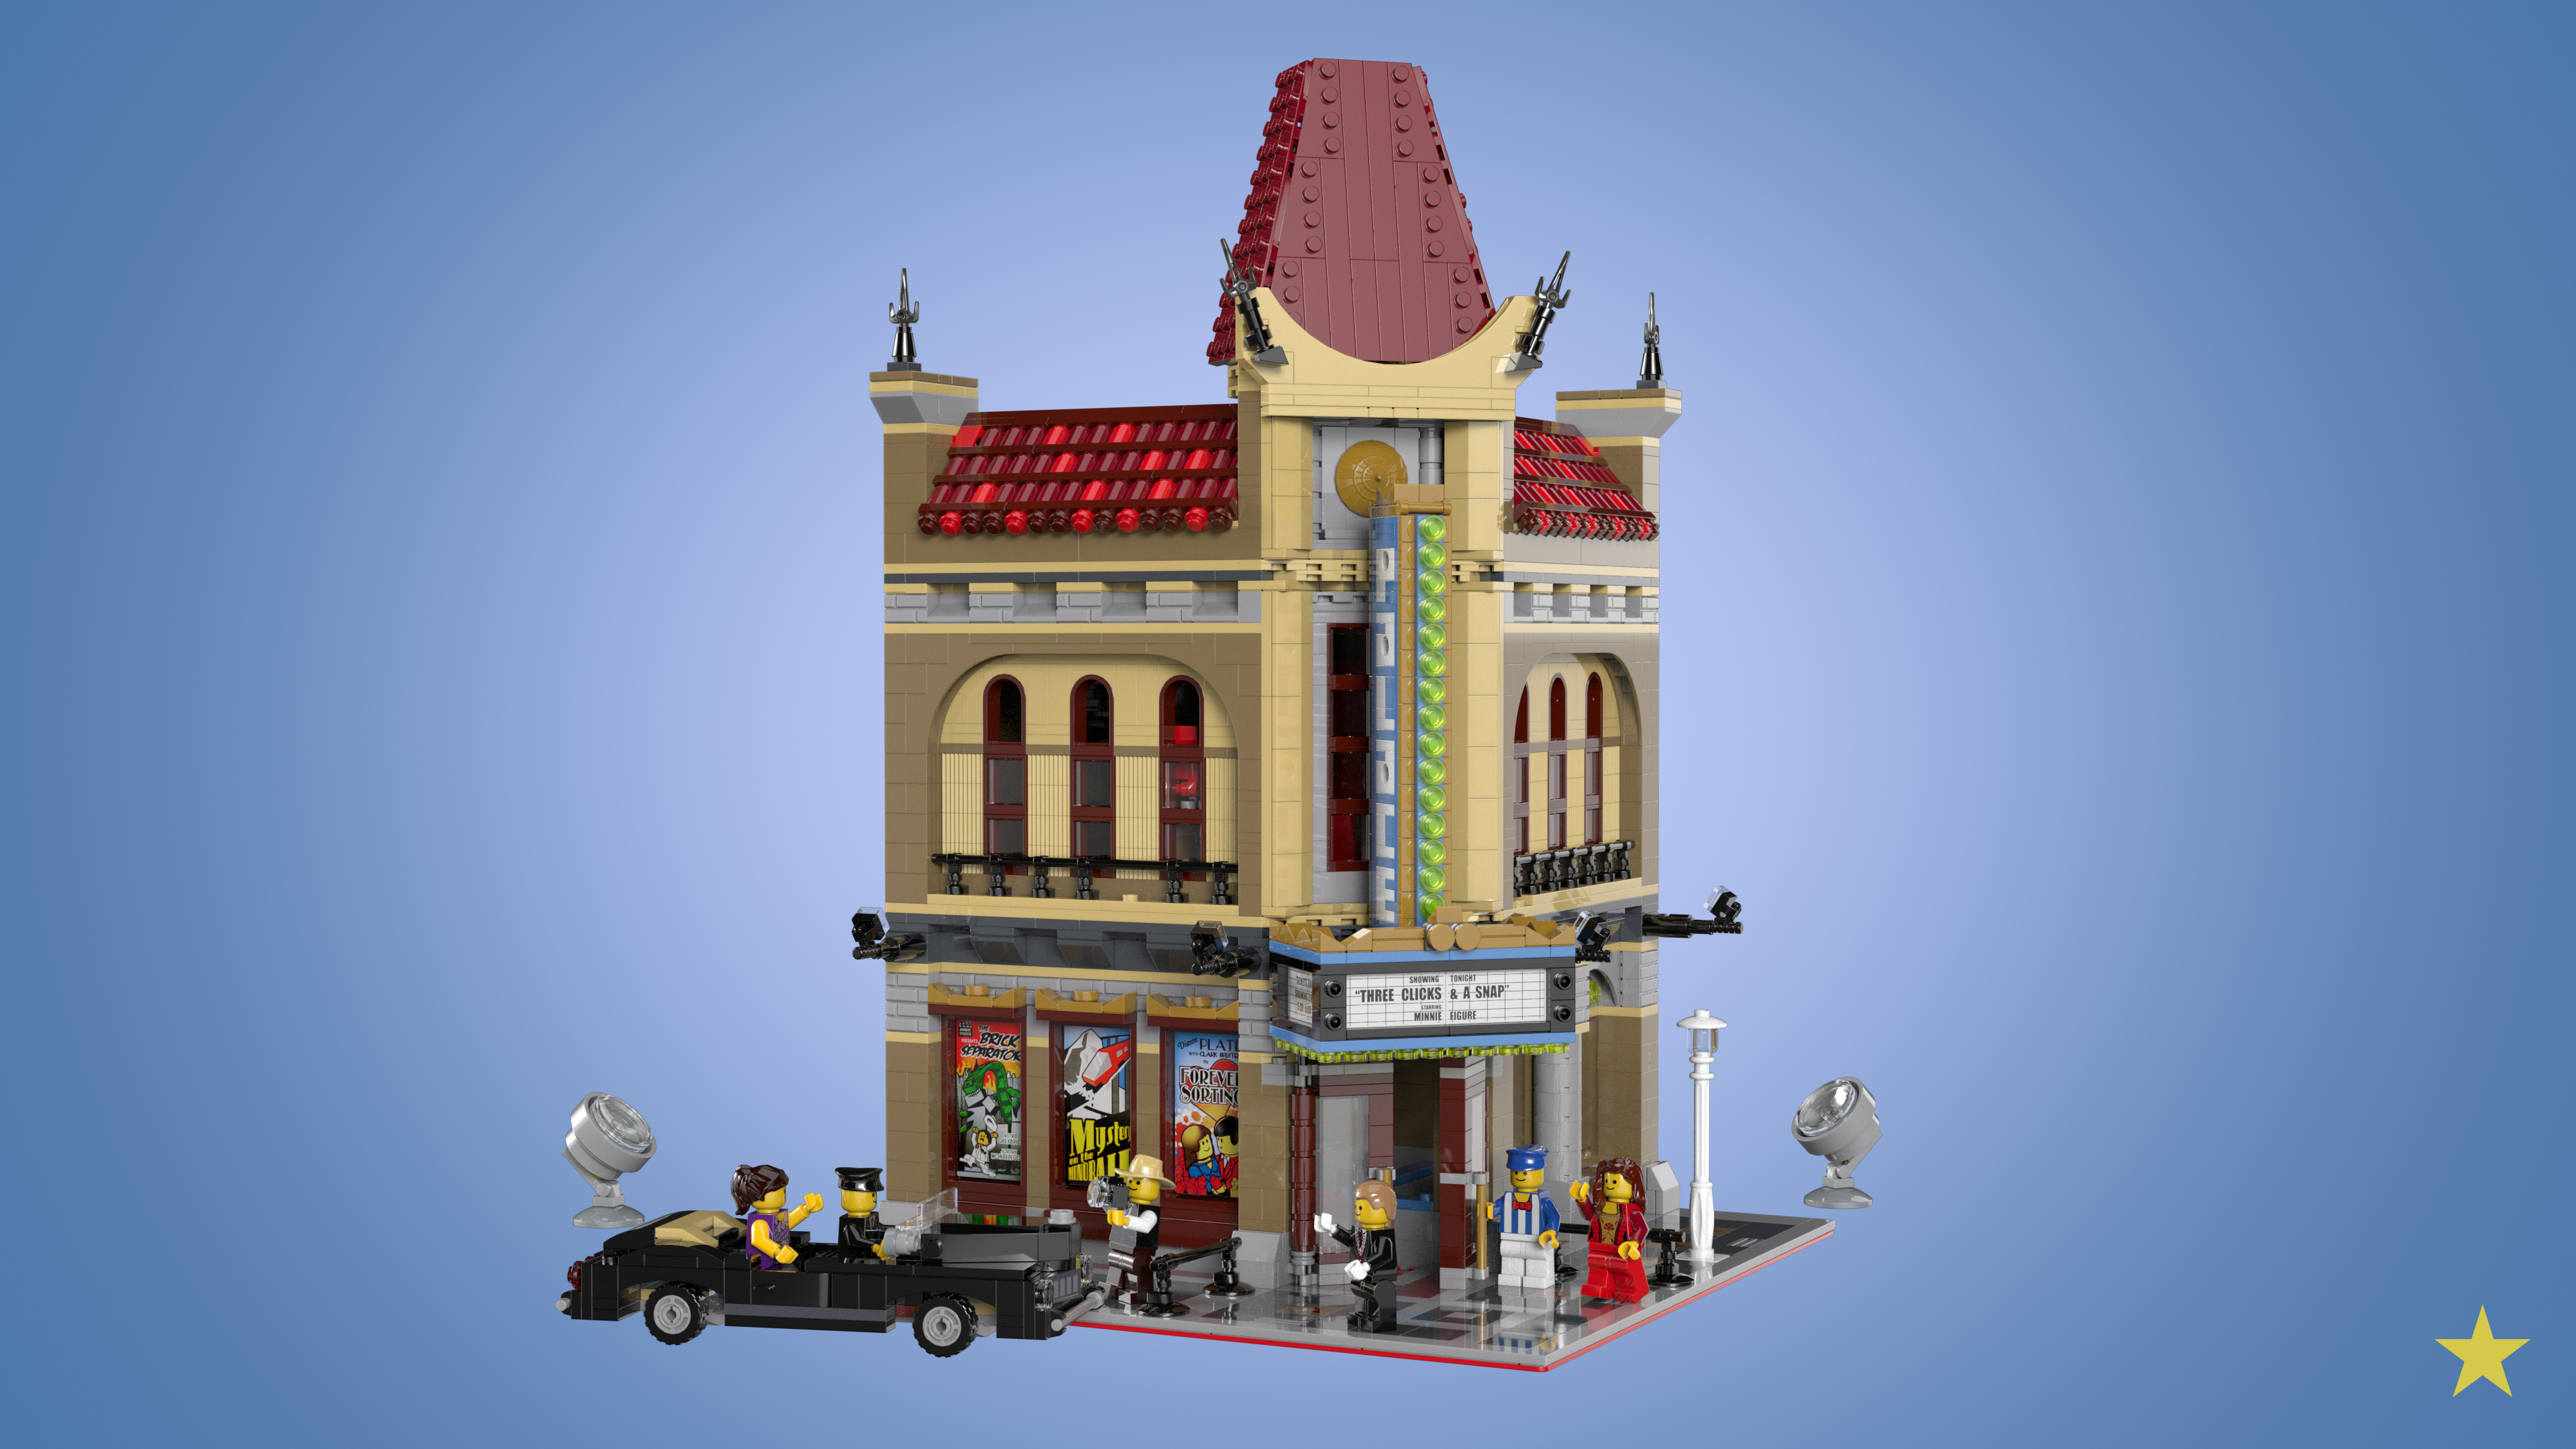 LEGO_Palace_Cinema_v02_VR_3840x2160.jpg